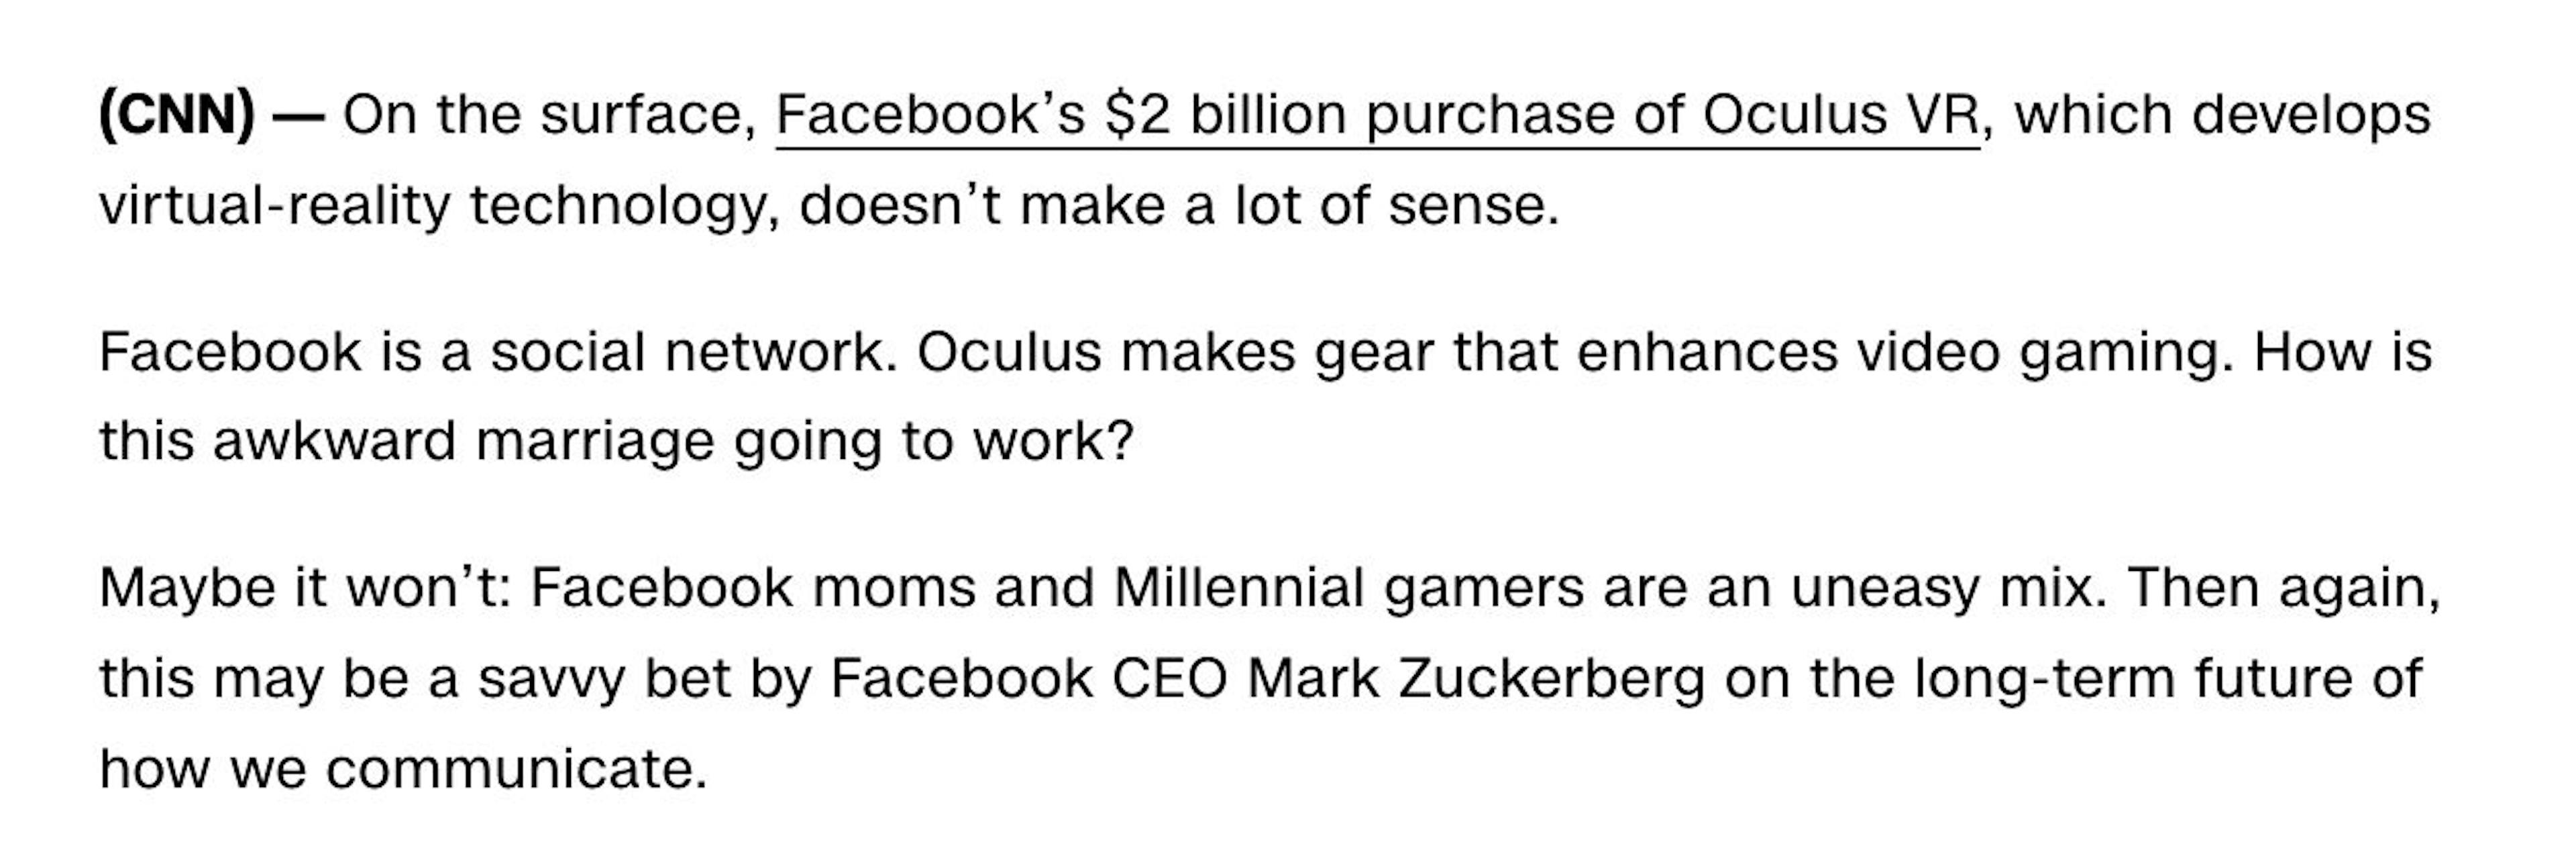 De "¿Qué es Oculus VR y por qué Facebook pagó 2 mil millones de dólares por él?" publicado el 26/03/2014